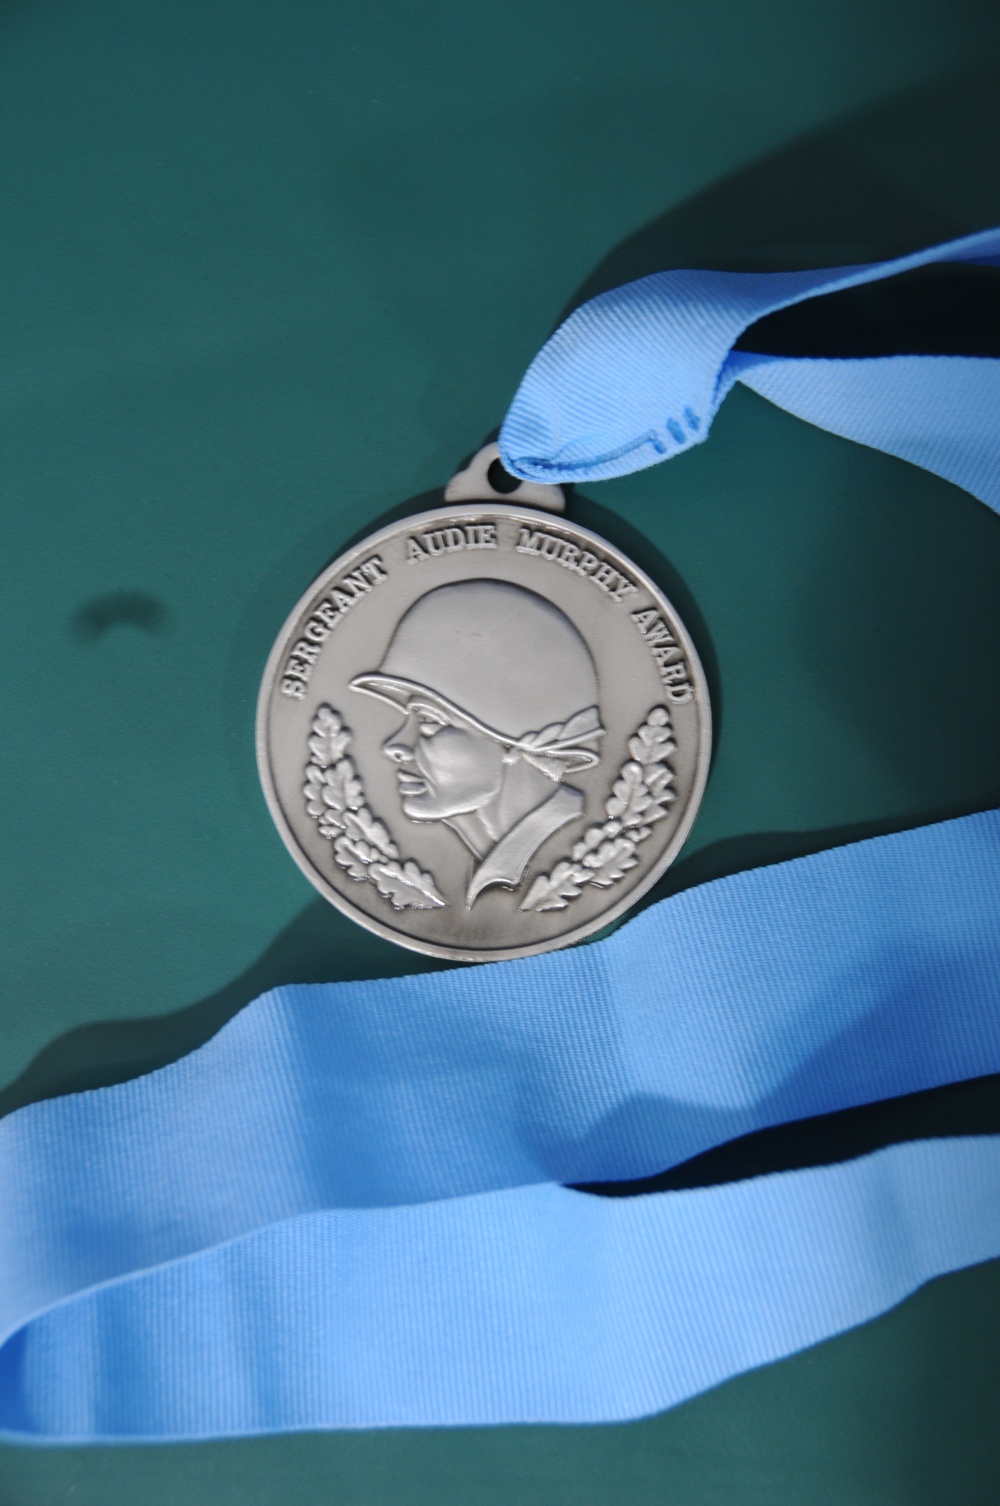 Audie Murphy Club medal